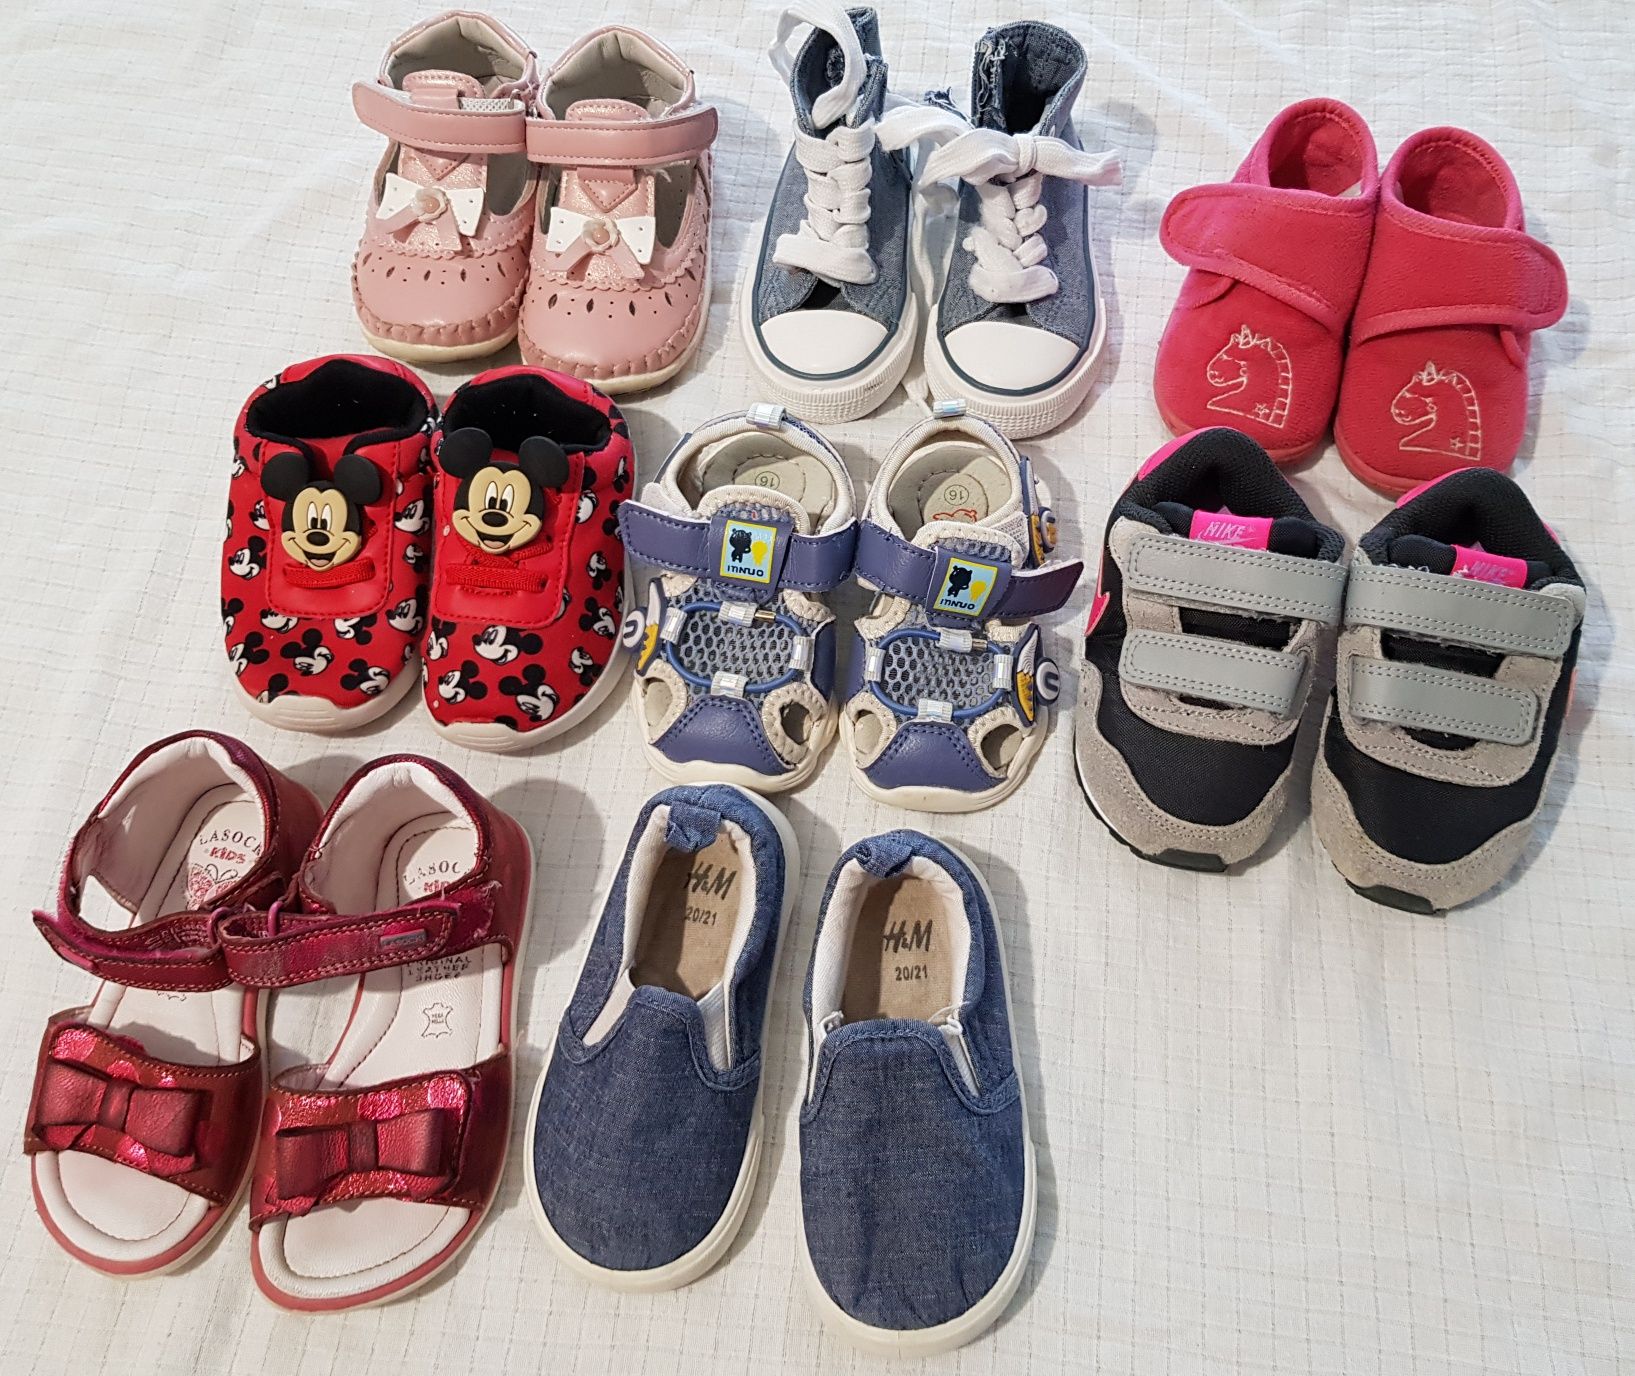 Adidasi si sandale copii 16, 19, 20, 21 si 22